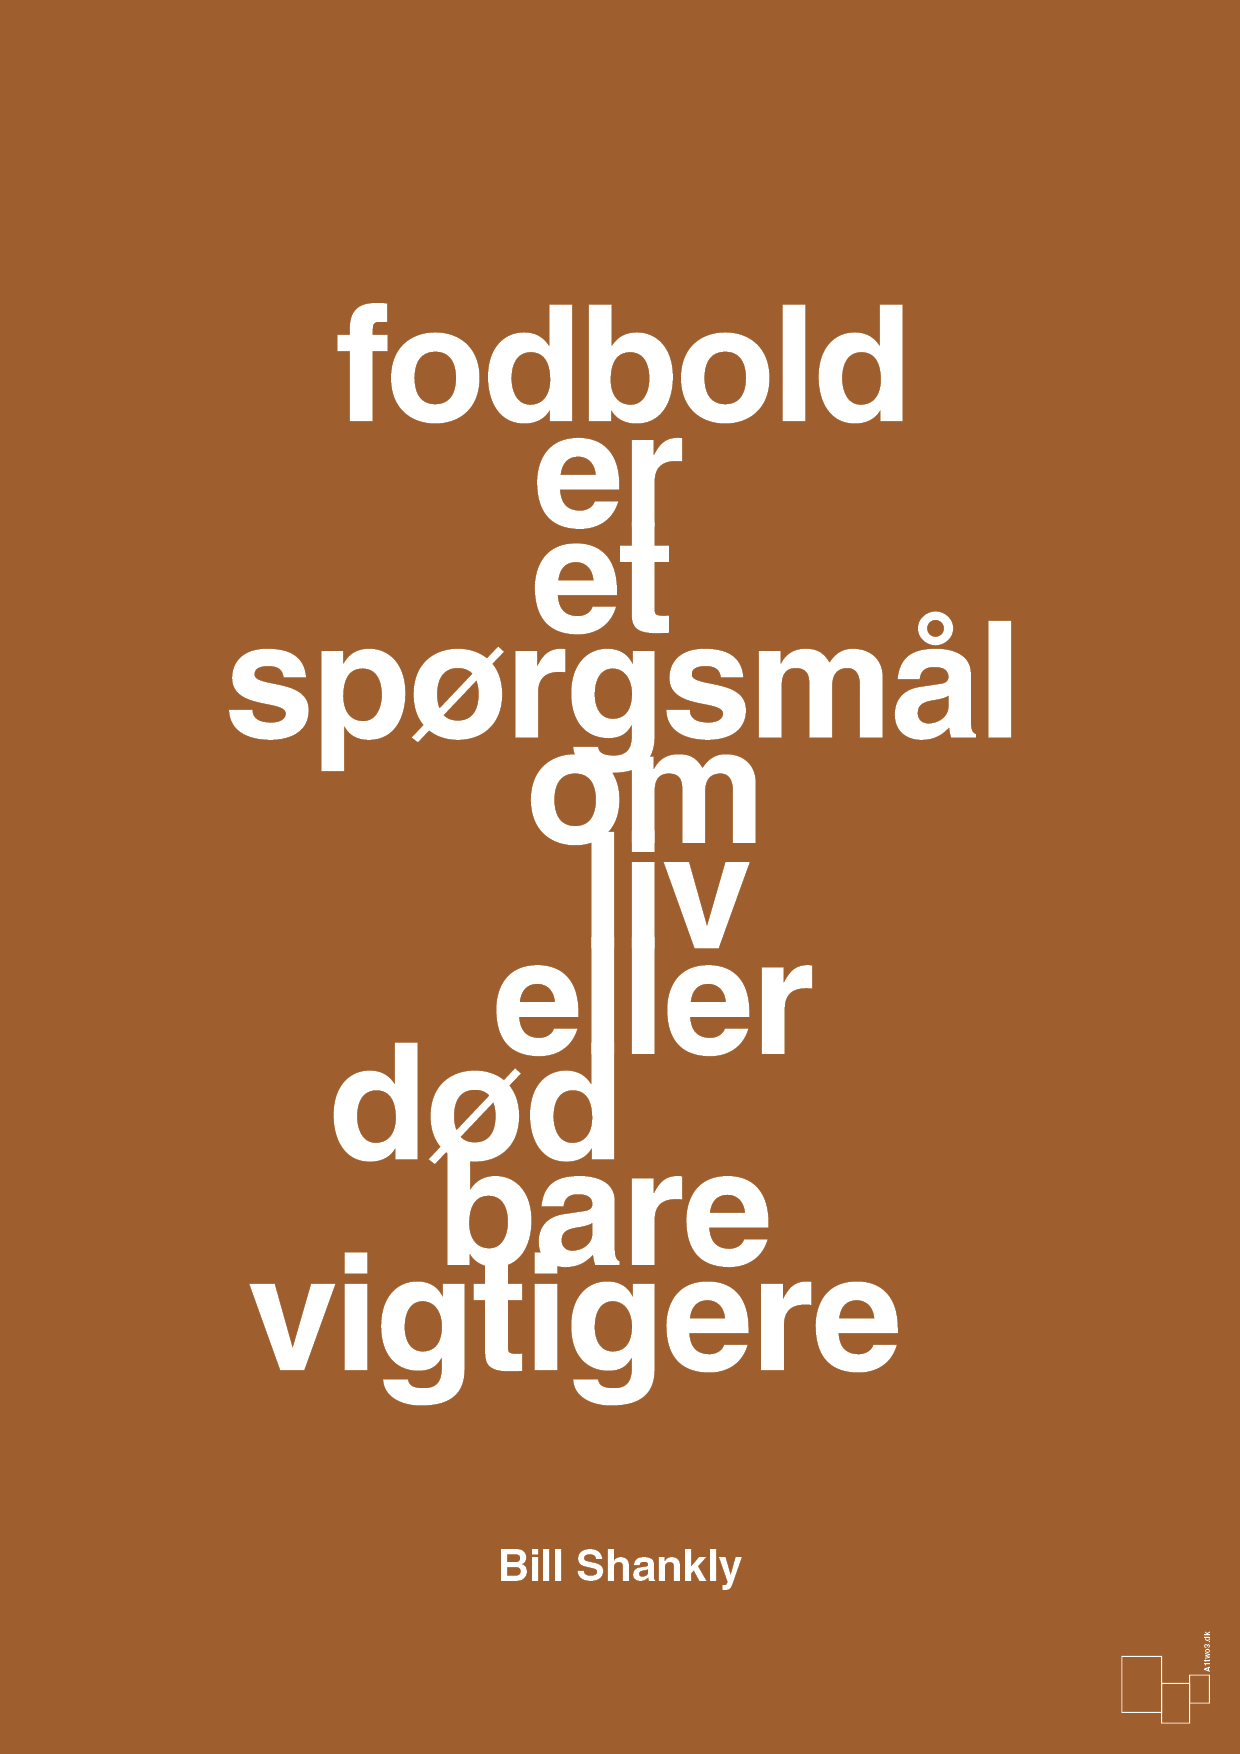 fodbold er et spørgsmål om liv eller død bare vigtigere - Plakat med Citater i Cognac